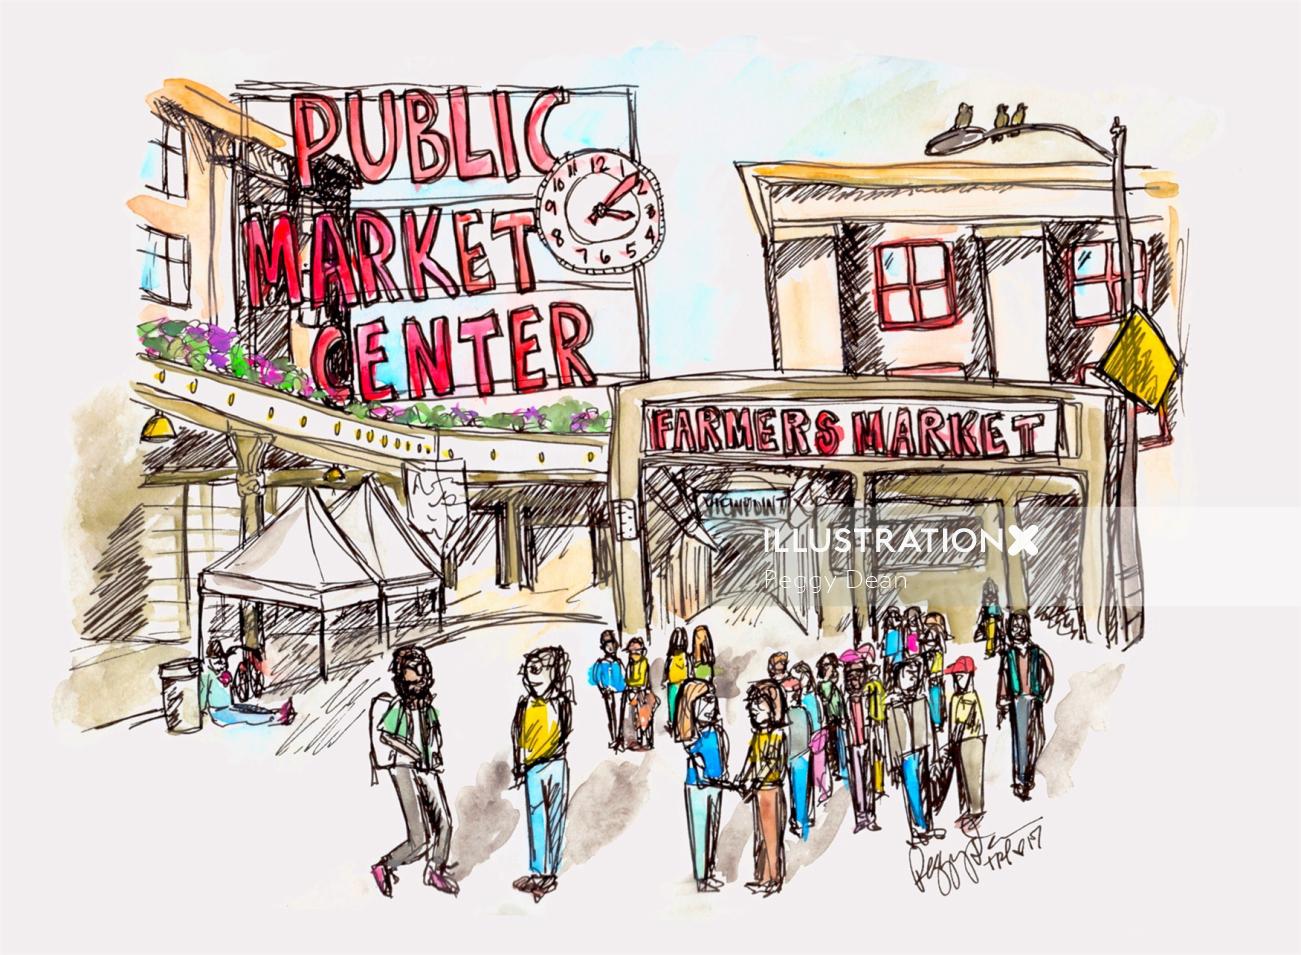 Dibujo del centro de mercado público